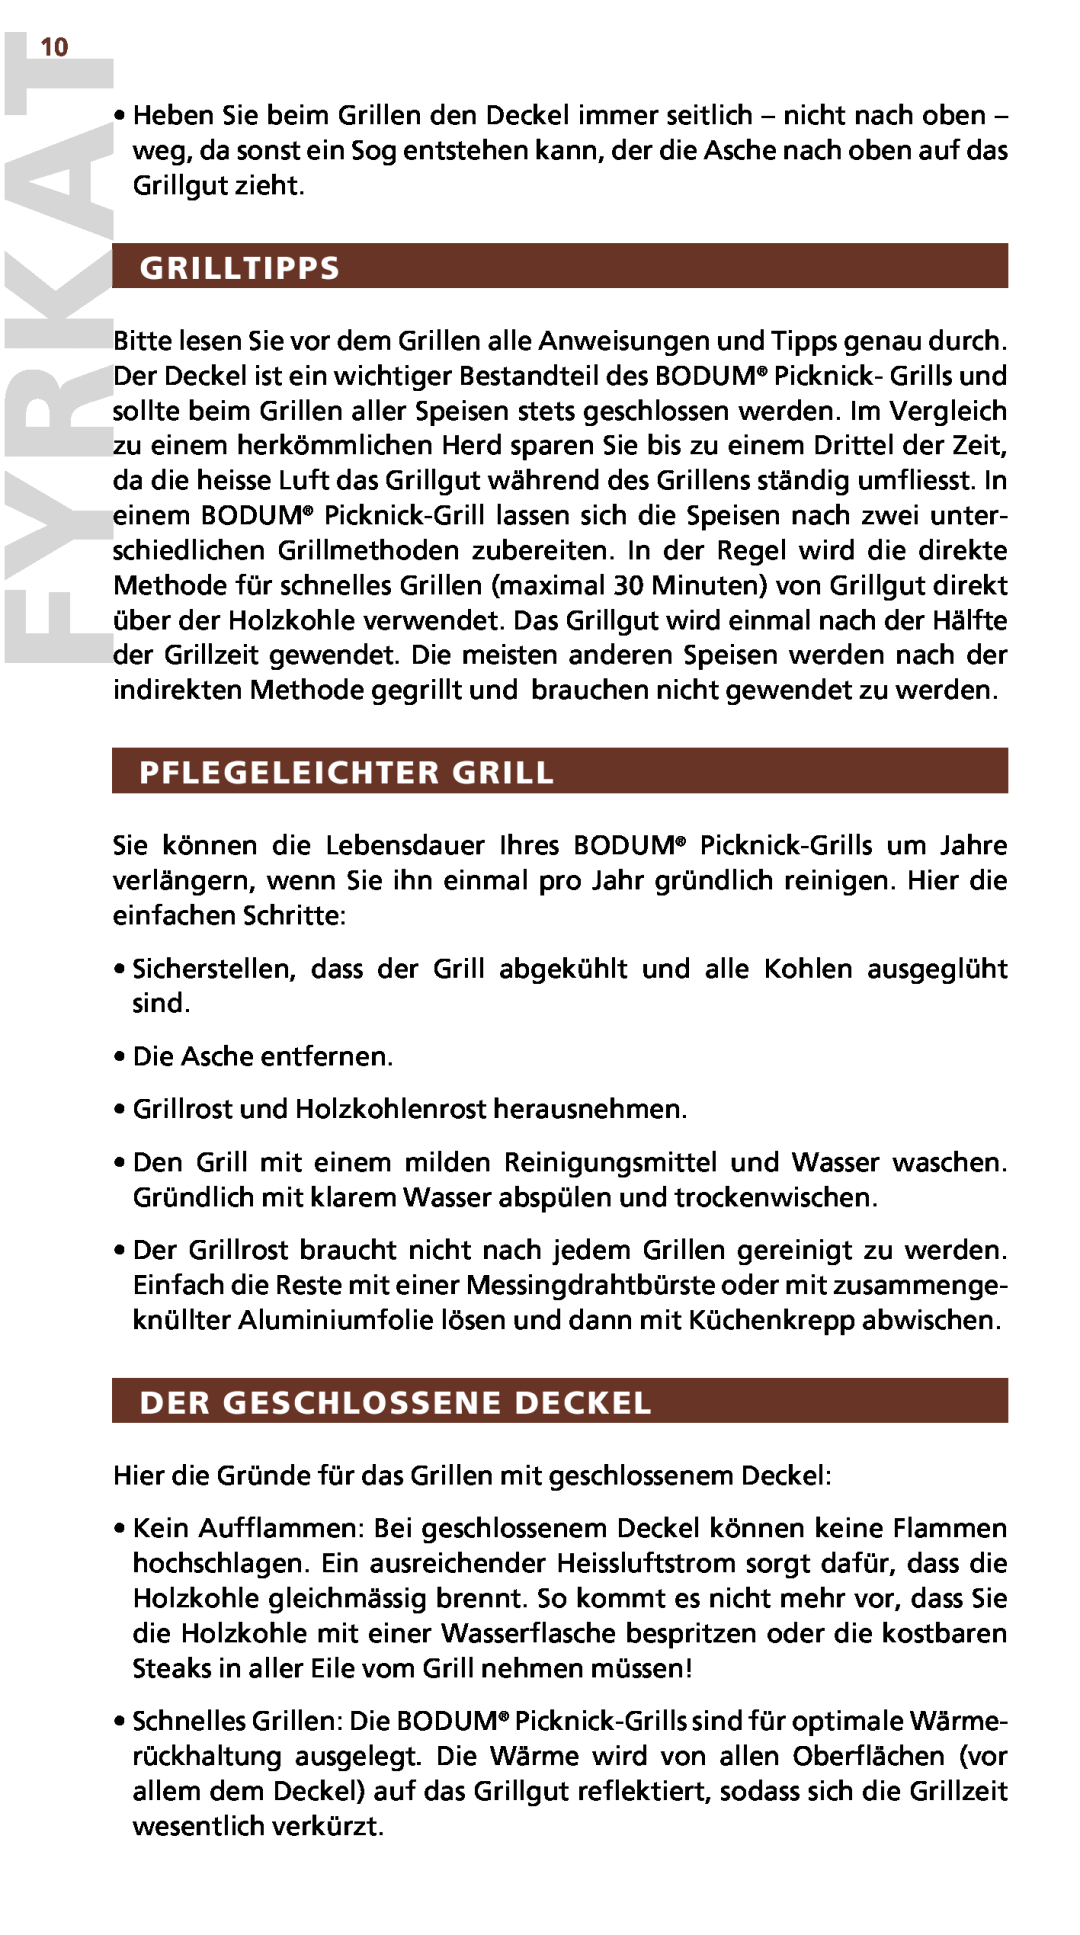 Bodum 10630 manual Grilltipps, Pflegeleichter Grill, Der geschlossene Deckel 